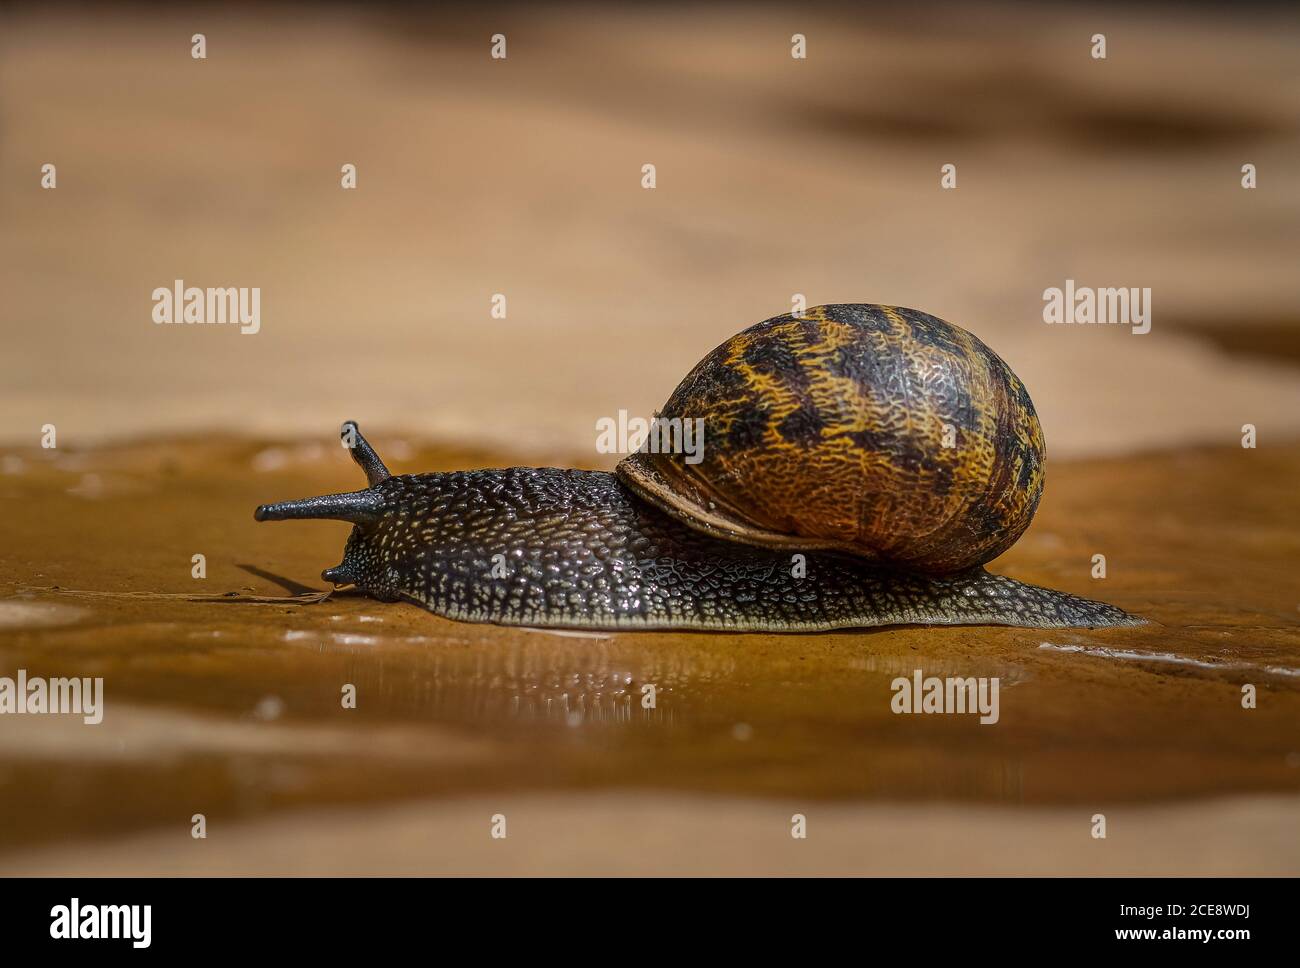 A garden snail crawls along a path. Stock Photo